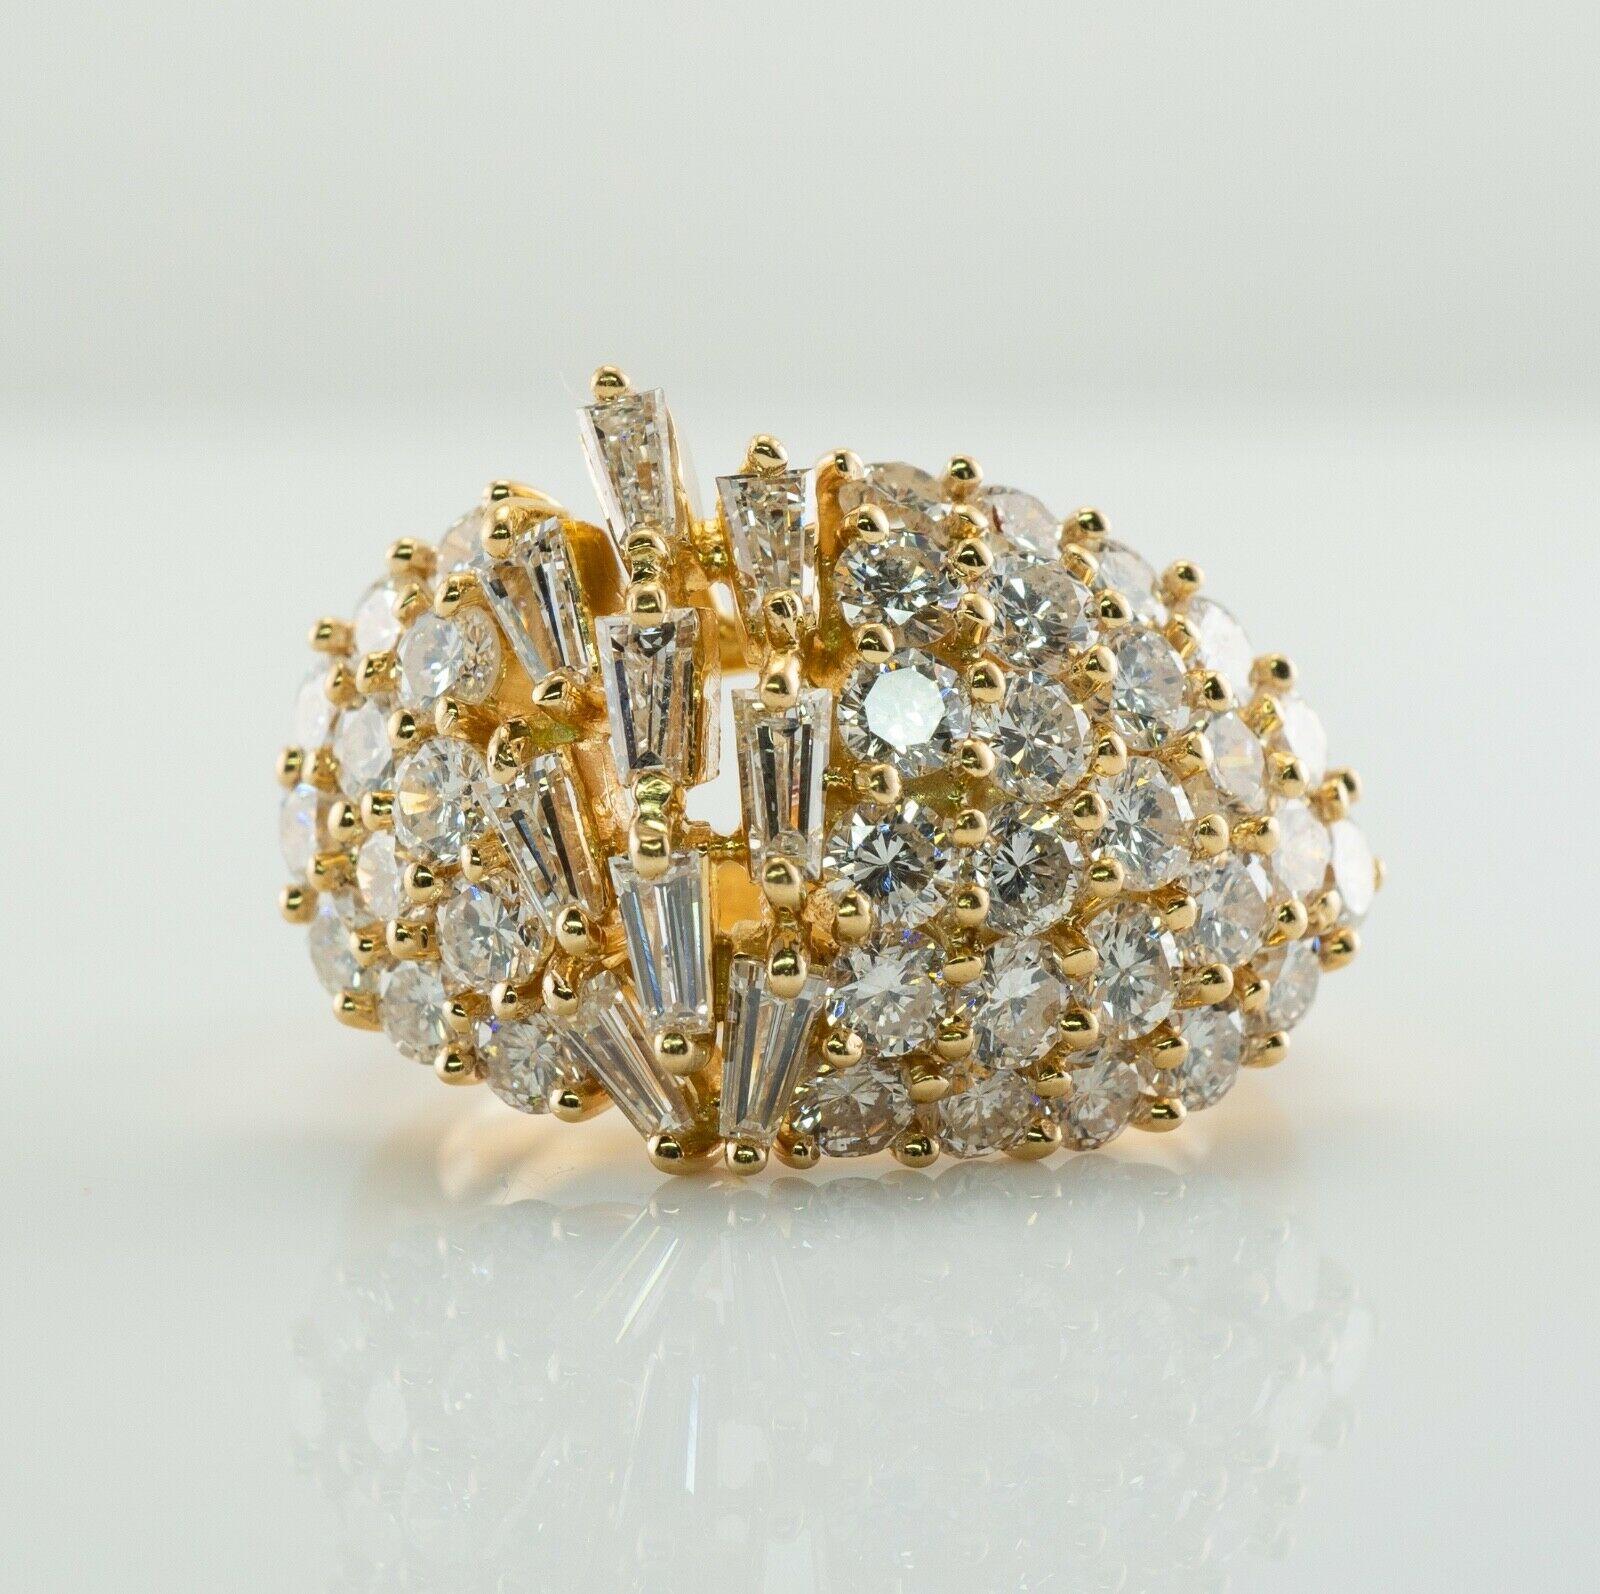 Dieser unglaubliche Ring ist aus massivem 18-karätigem Gelbgold gefertigt. Fünfundzwanzig Diamanten auf der einen Seite und zwölf Diamanten auf der anderen Seite sind runde Edelsteine im Brillantschliff von insgesamt 1,70 Karat. Neun spitz